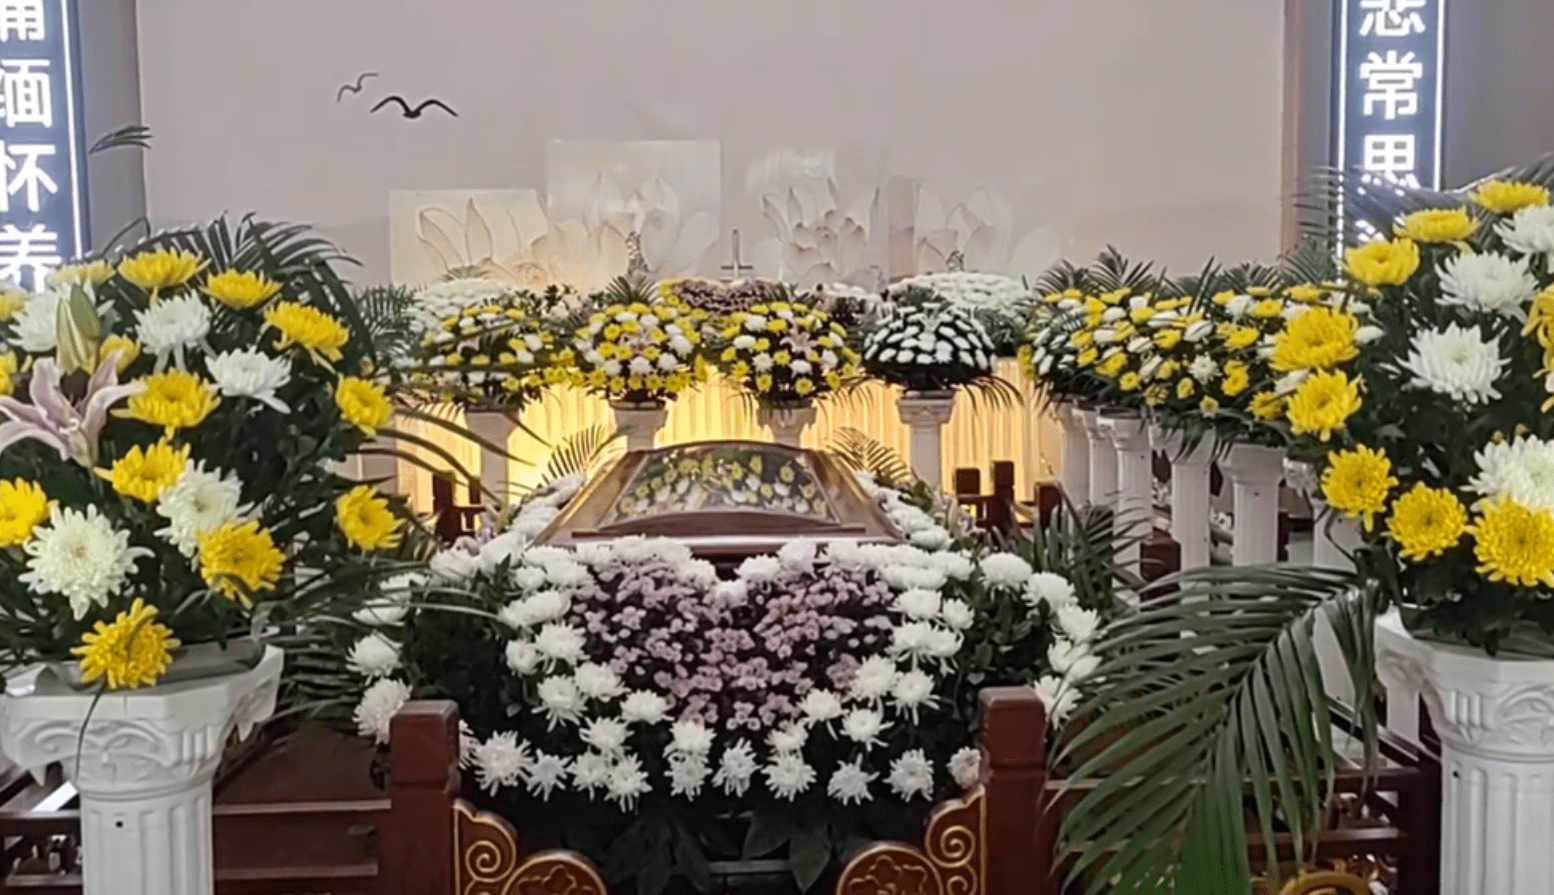 Châu Hải My bị lợi dụng sau khi qua đời, tạo dựng đám tang giả để câu view khiến netizen phẫn nộ - ảnh 3